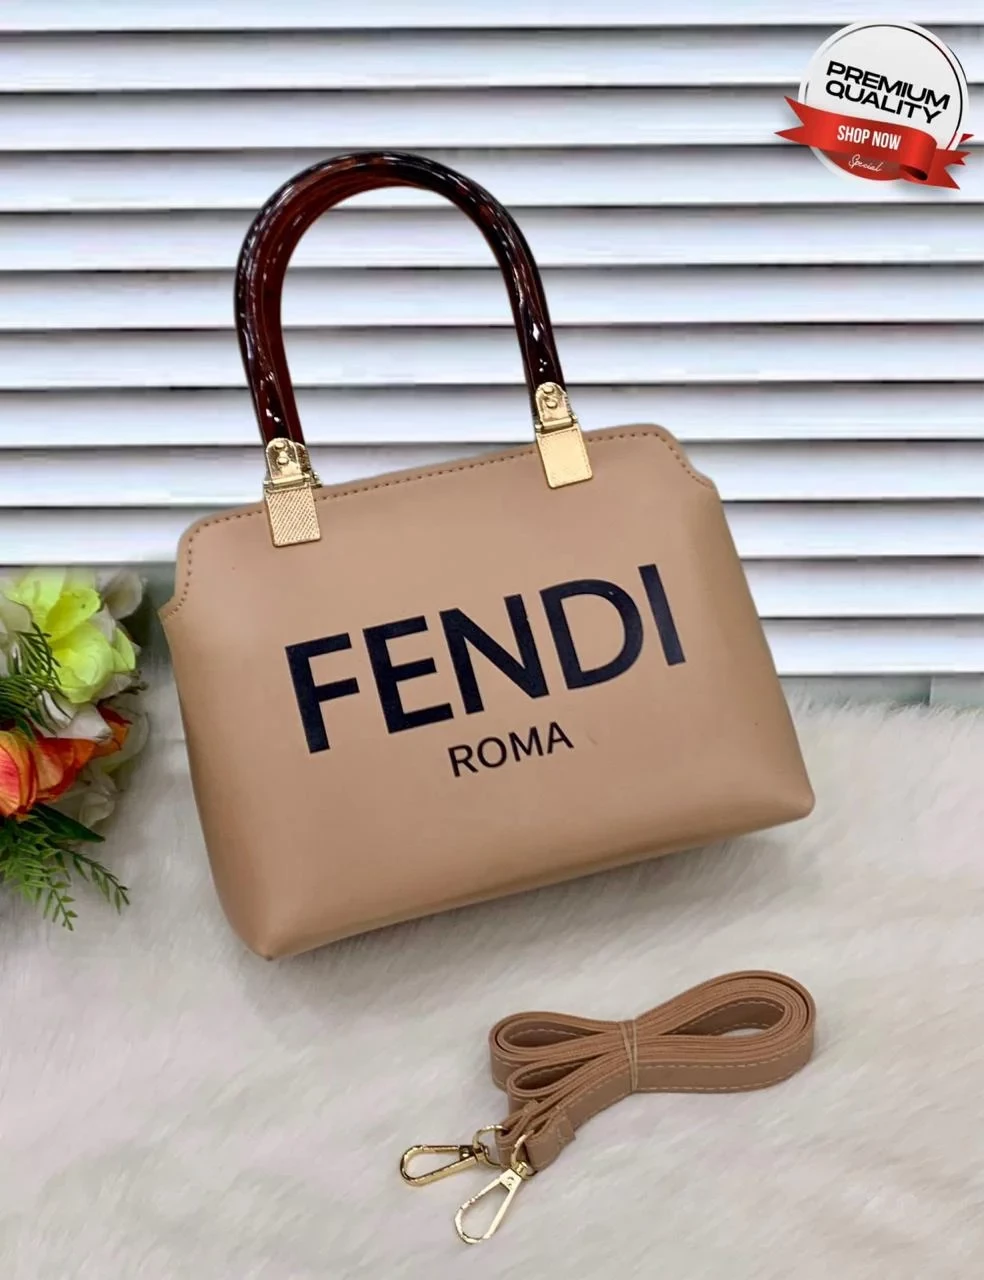 Fendi Roma Bag